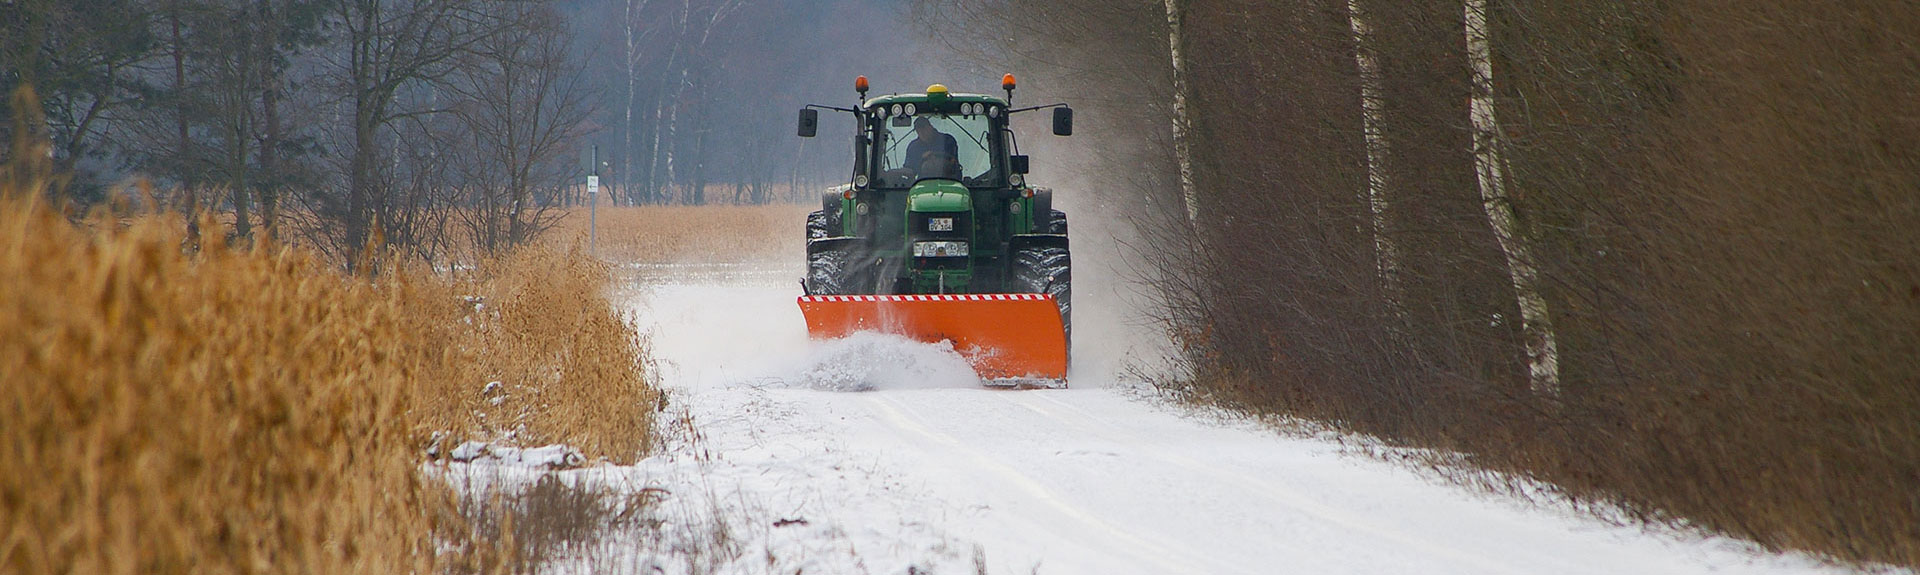 Kleintraktor schneeschild - Die hochwertigsten Kleintraktor schneeschild verglichen!